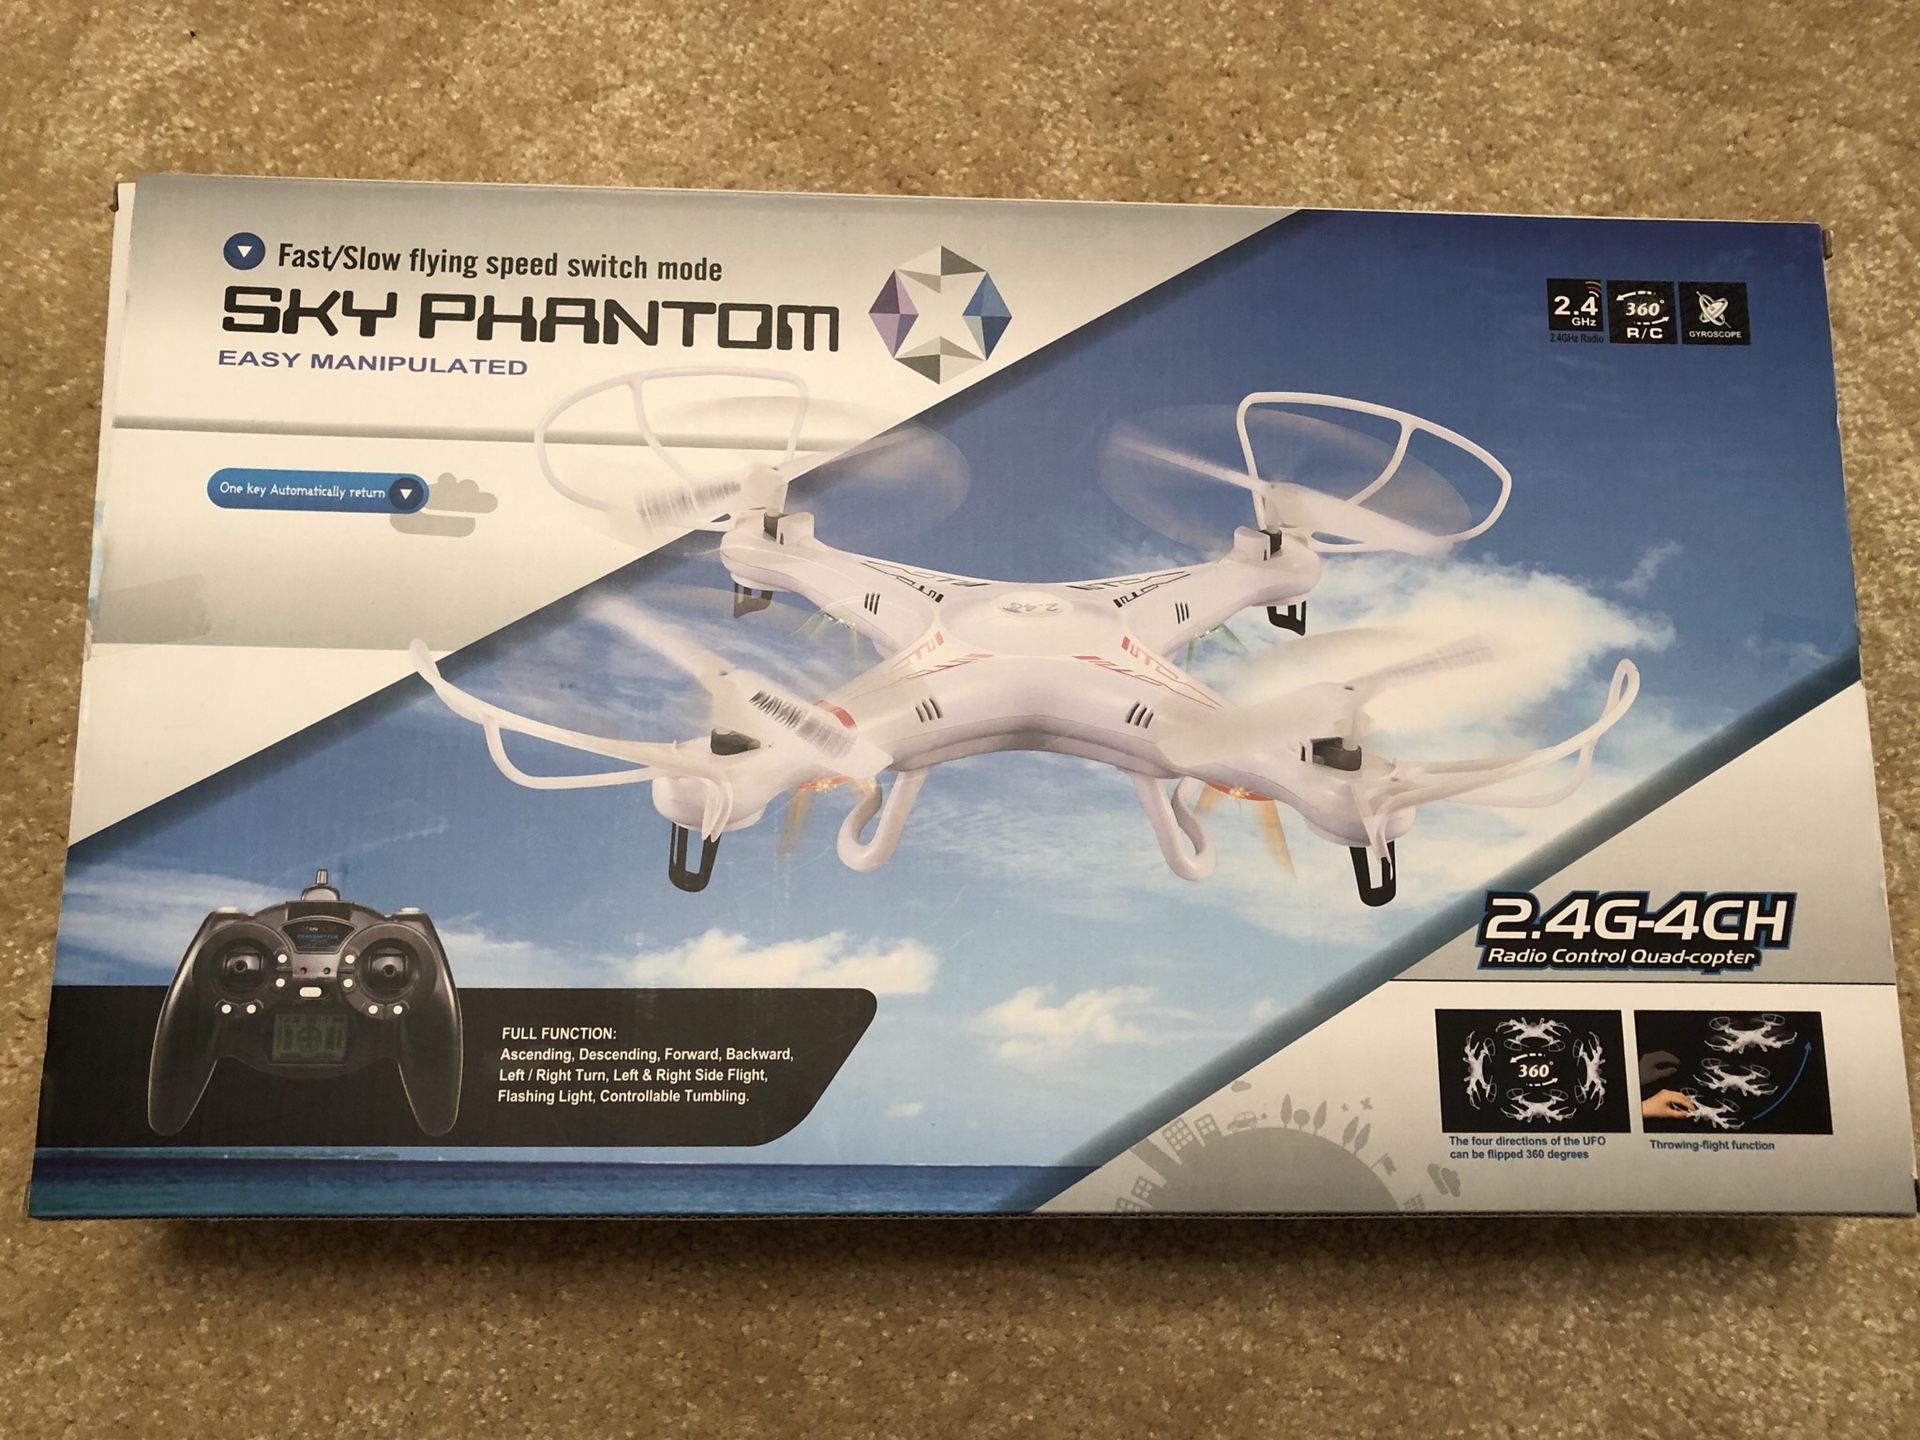 sky phantom 2.4g-4ch radio control quadcopter - brand new never opened